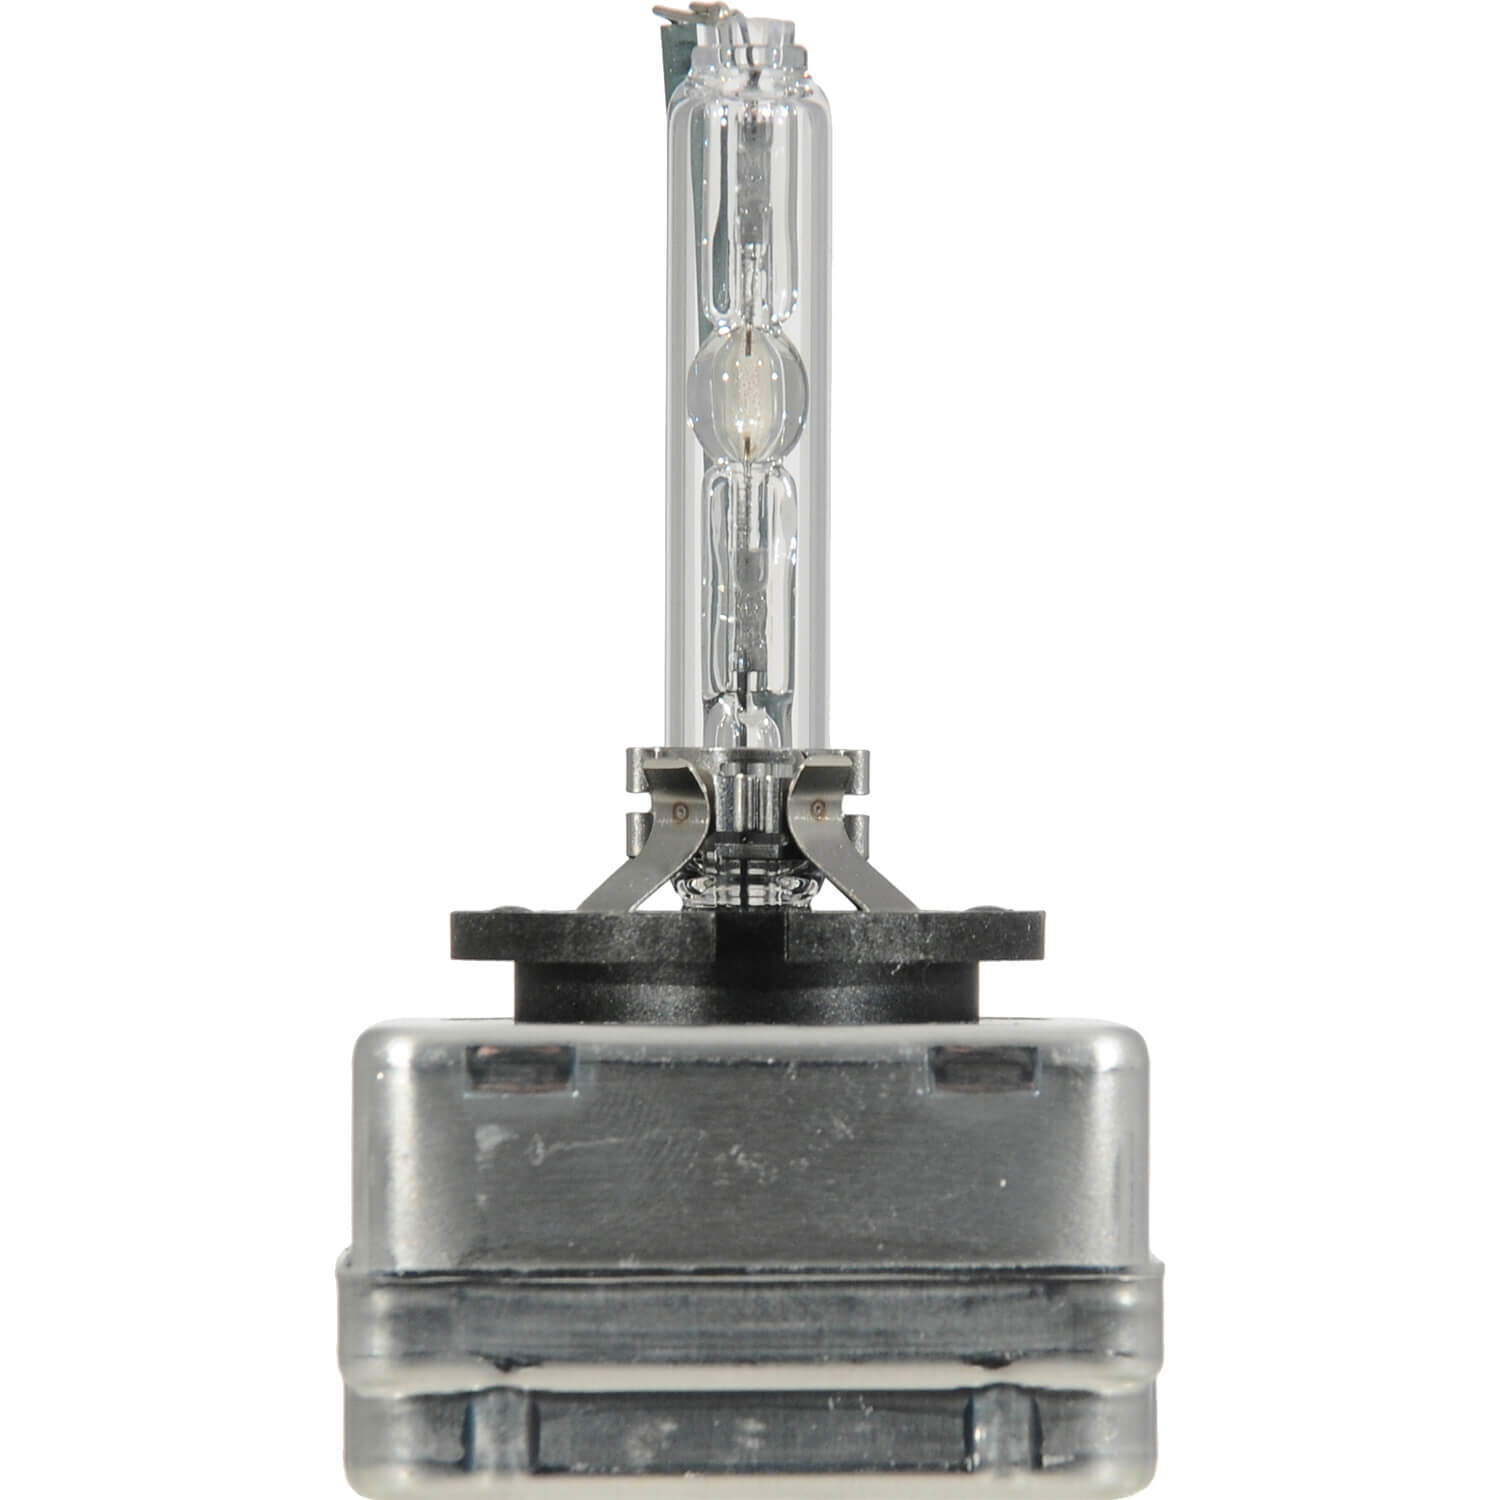 SYLVANIA D3S Basic HID Headlight Bulb, 1 Pack